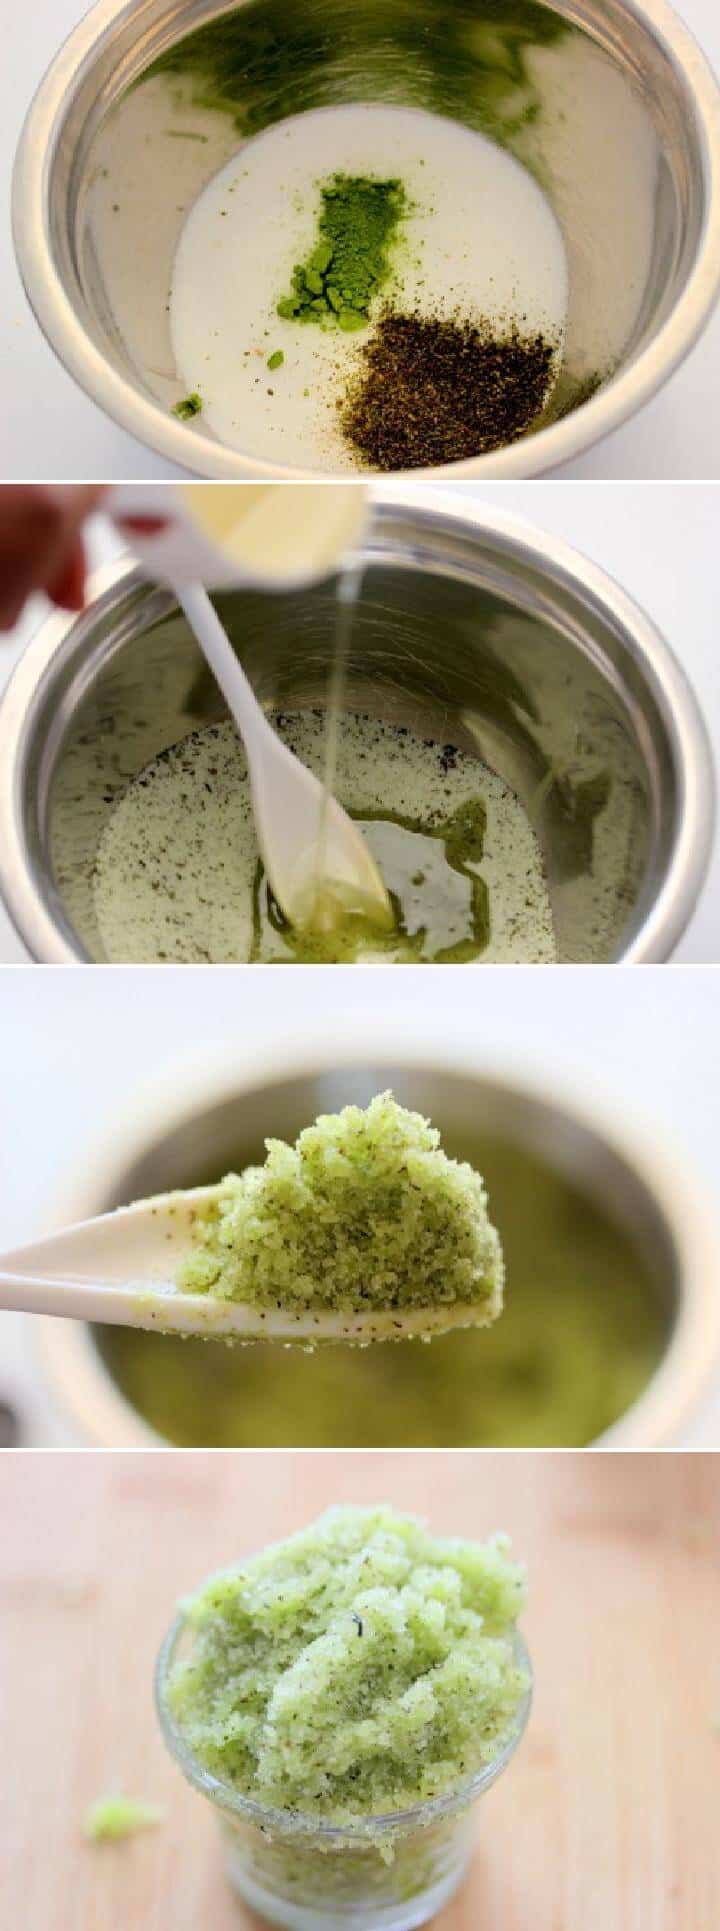 Tutorial de exfoliante de azúcar con té verde casero